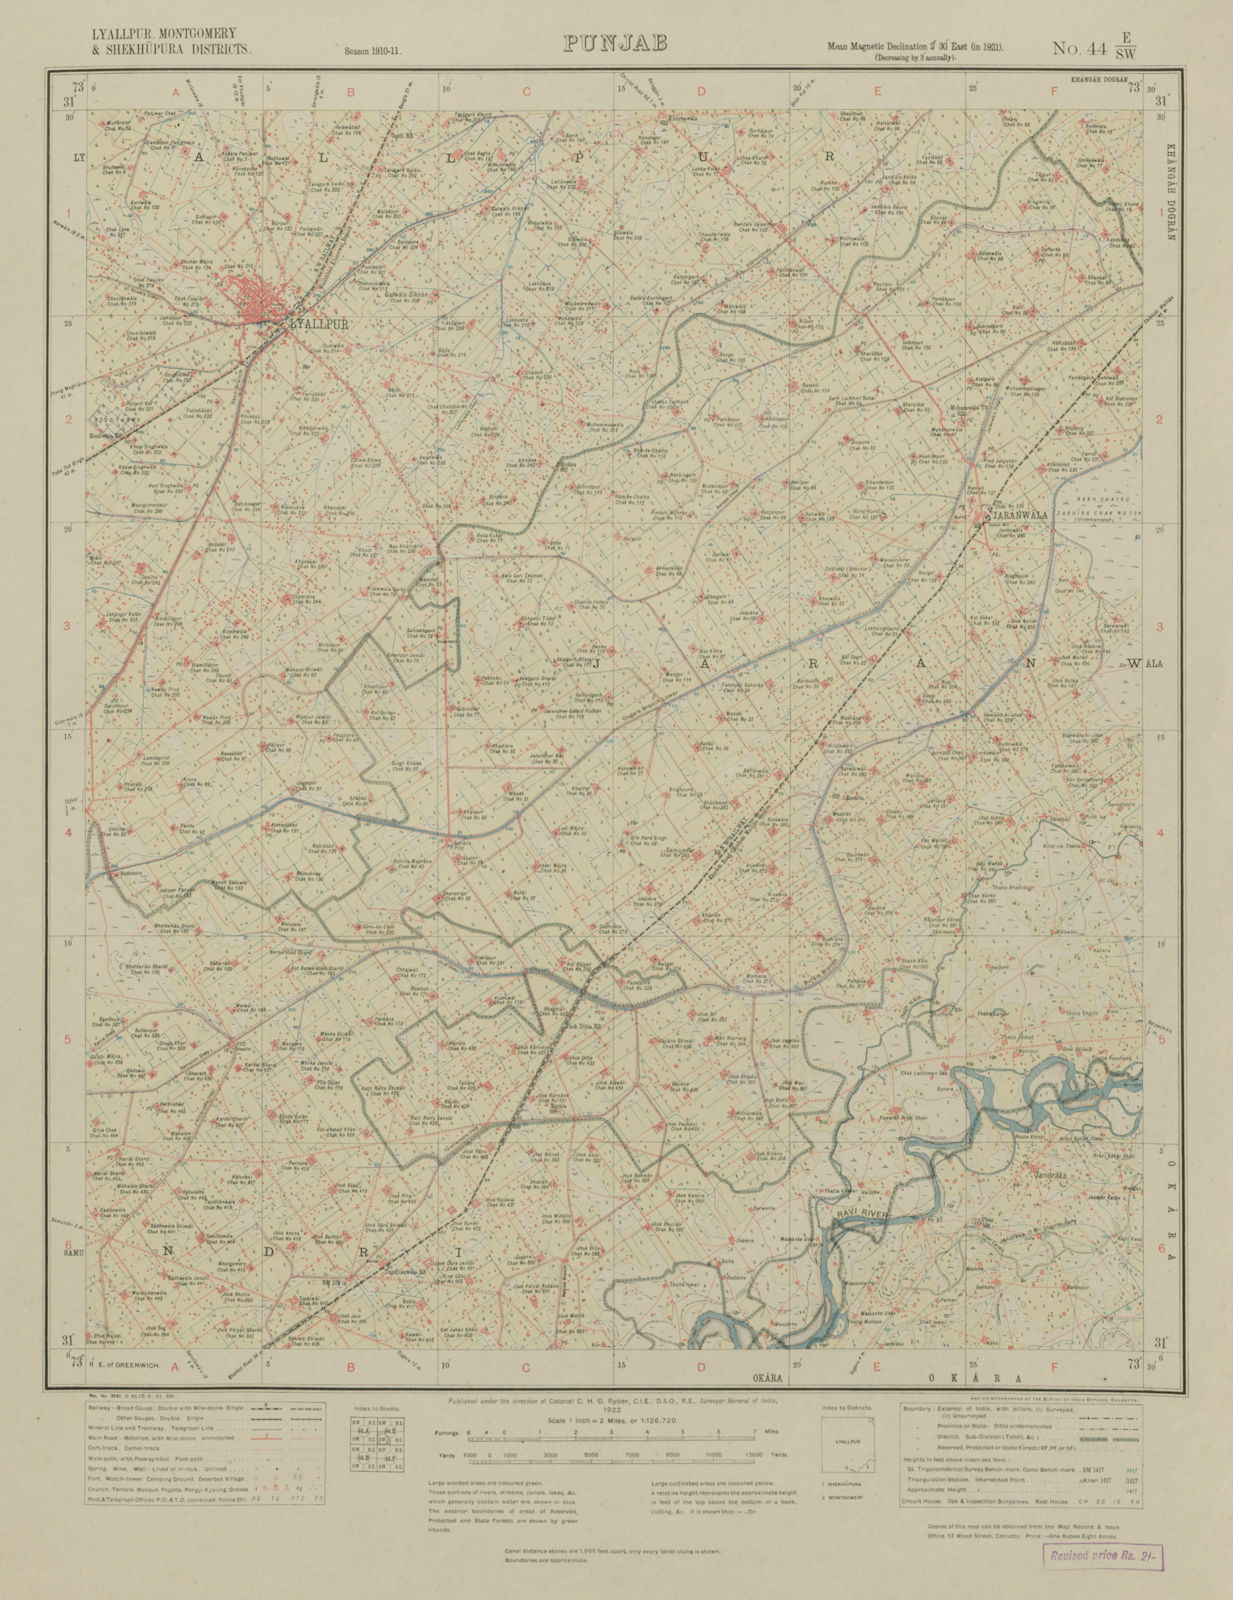 SURVEY OF INDIA 44 E/SW Pakistan Punjab Faisalabad (Lyallpur) Jaranwala 1922 map